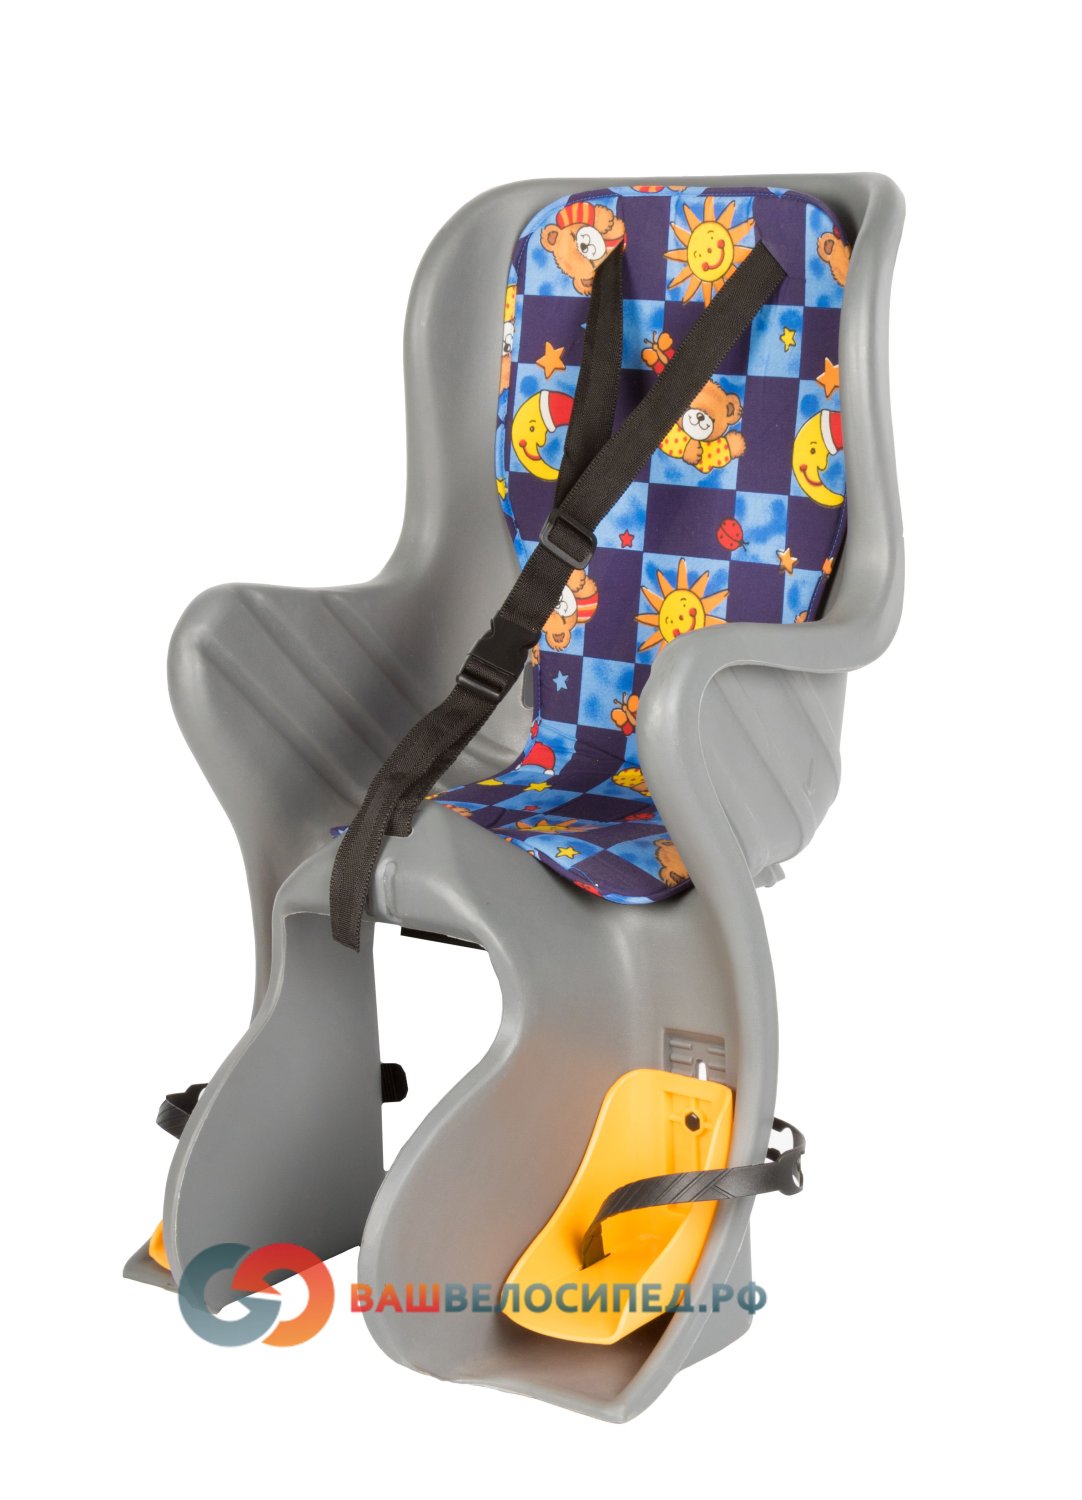 Детское велокресло на багажник SF-928L серое до 7 лет/22кг детское велокресло hamax siesta plus на багажник с маячком серый серый до 22 кг 552531